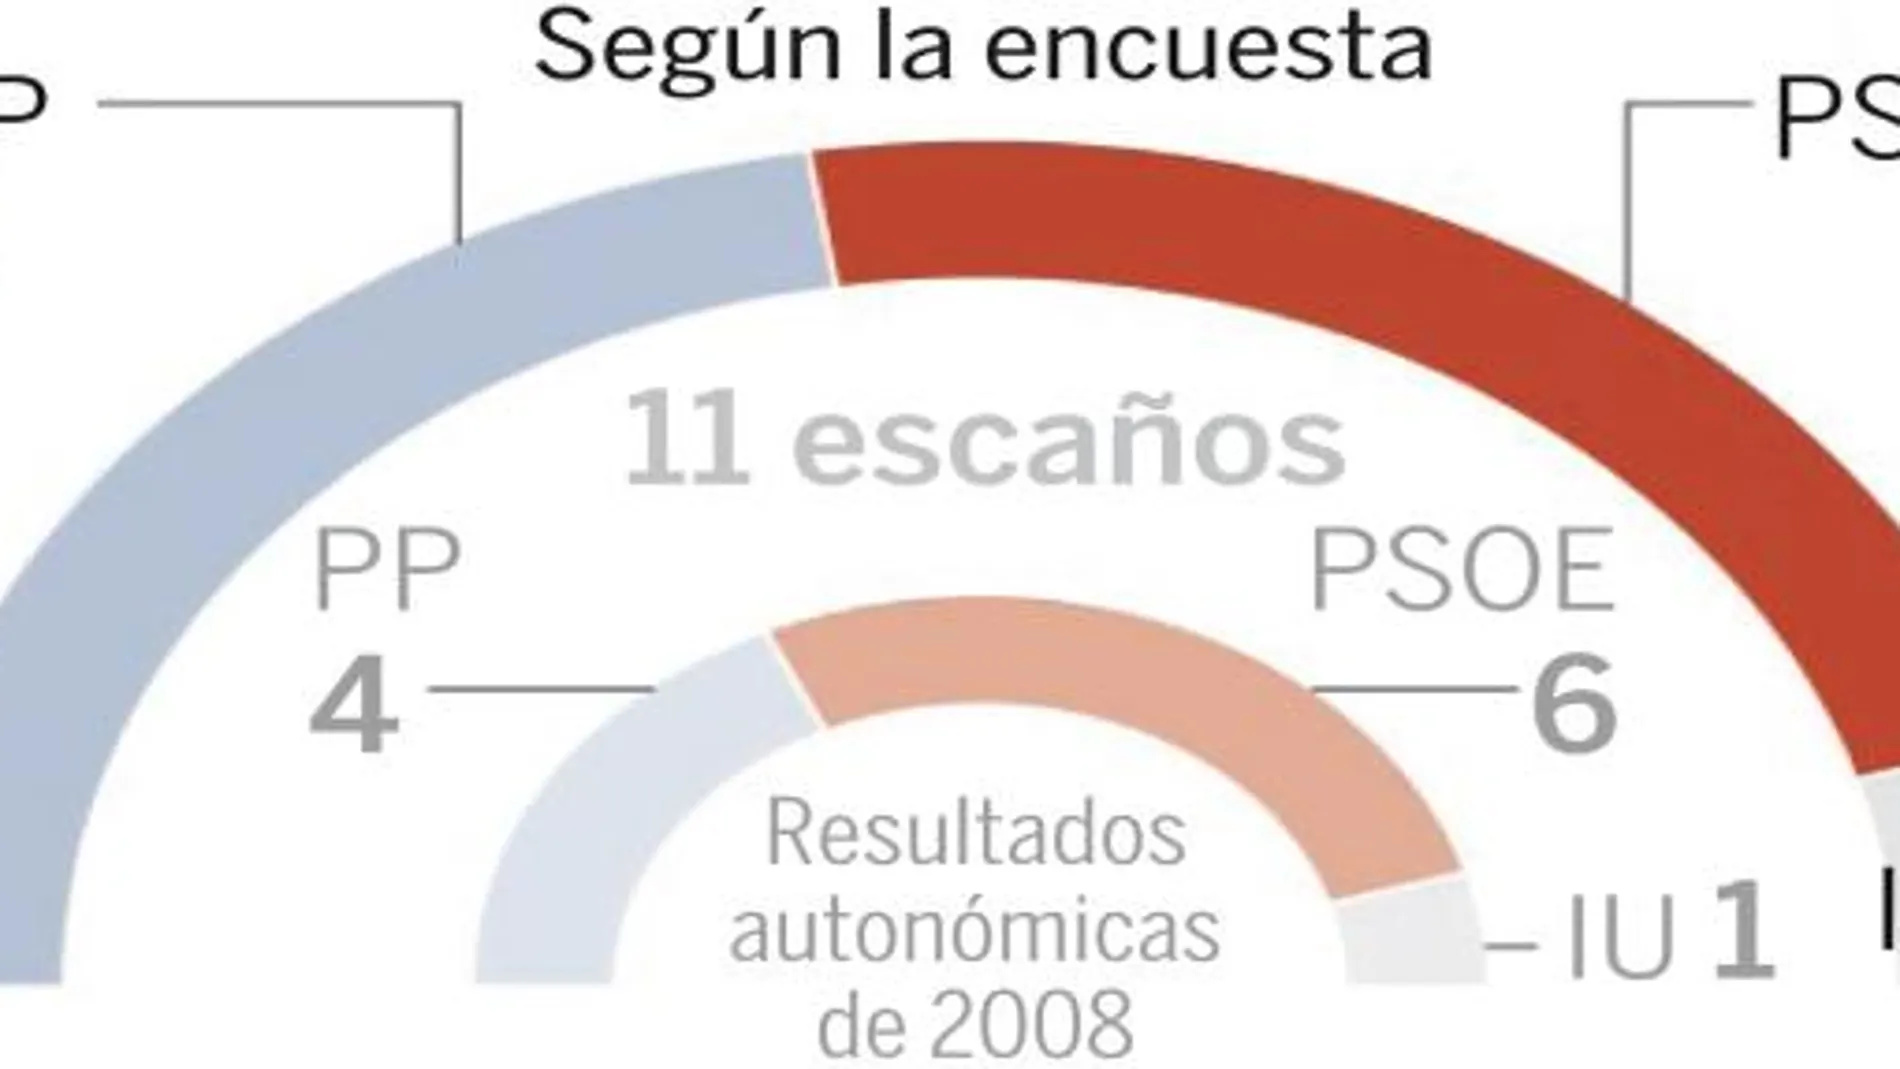 La pinza PSOE-IU se impone a los cinco escaños del PP